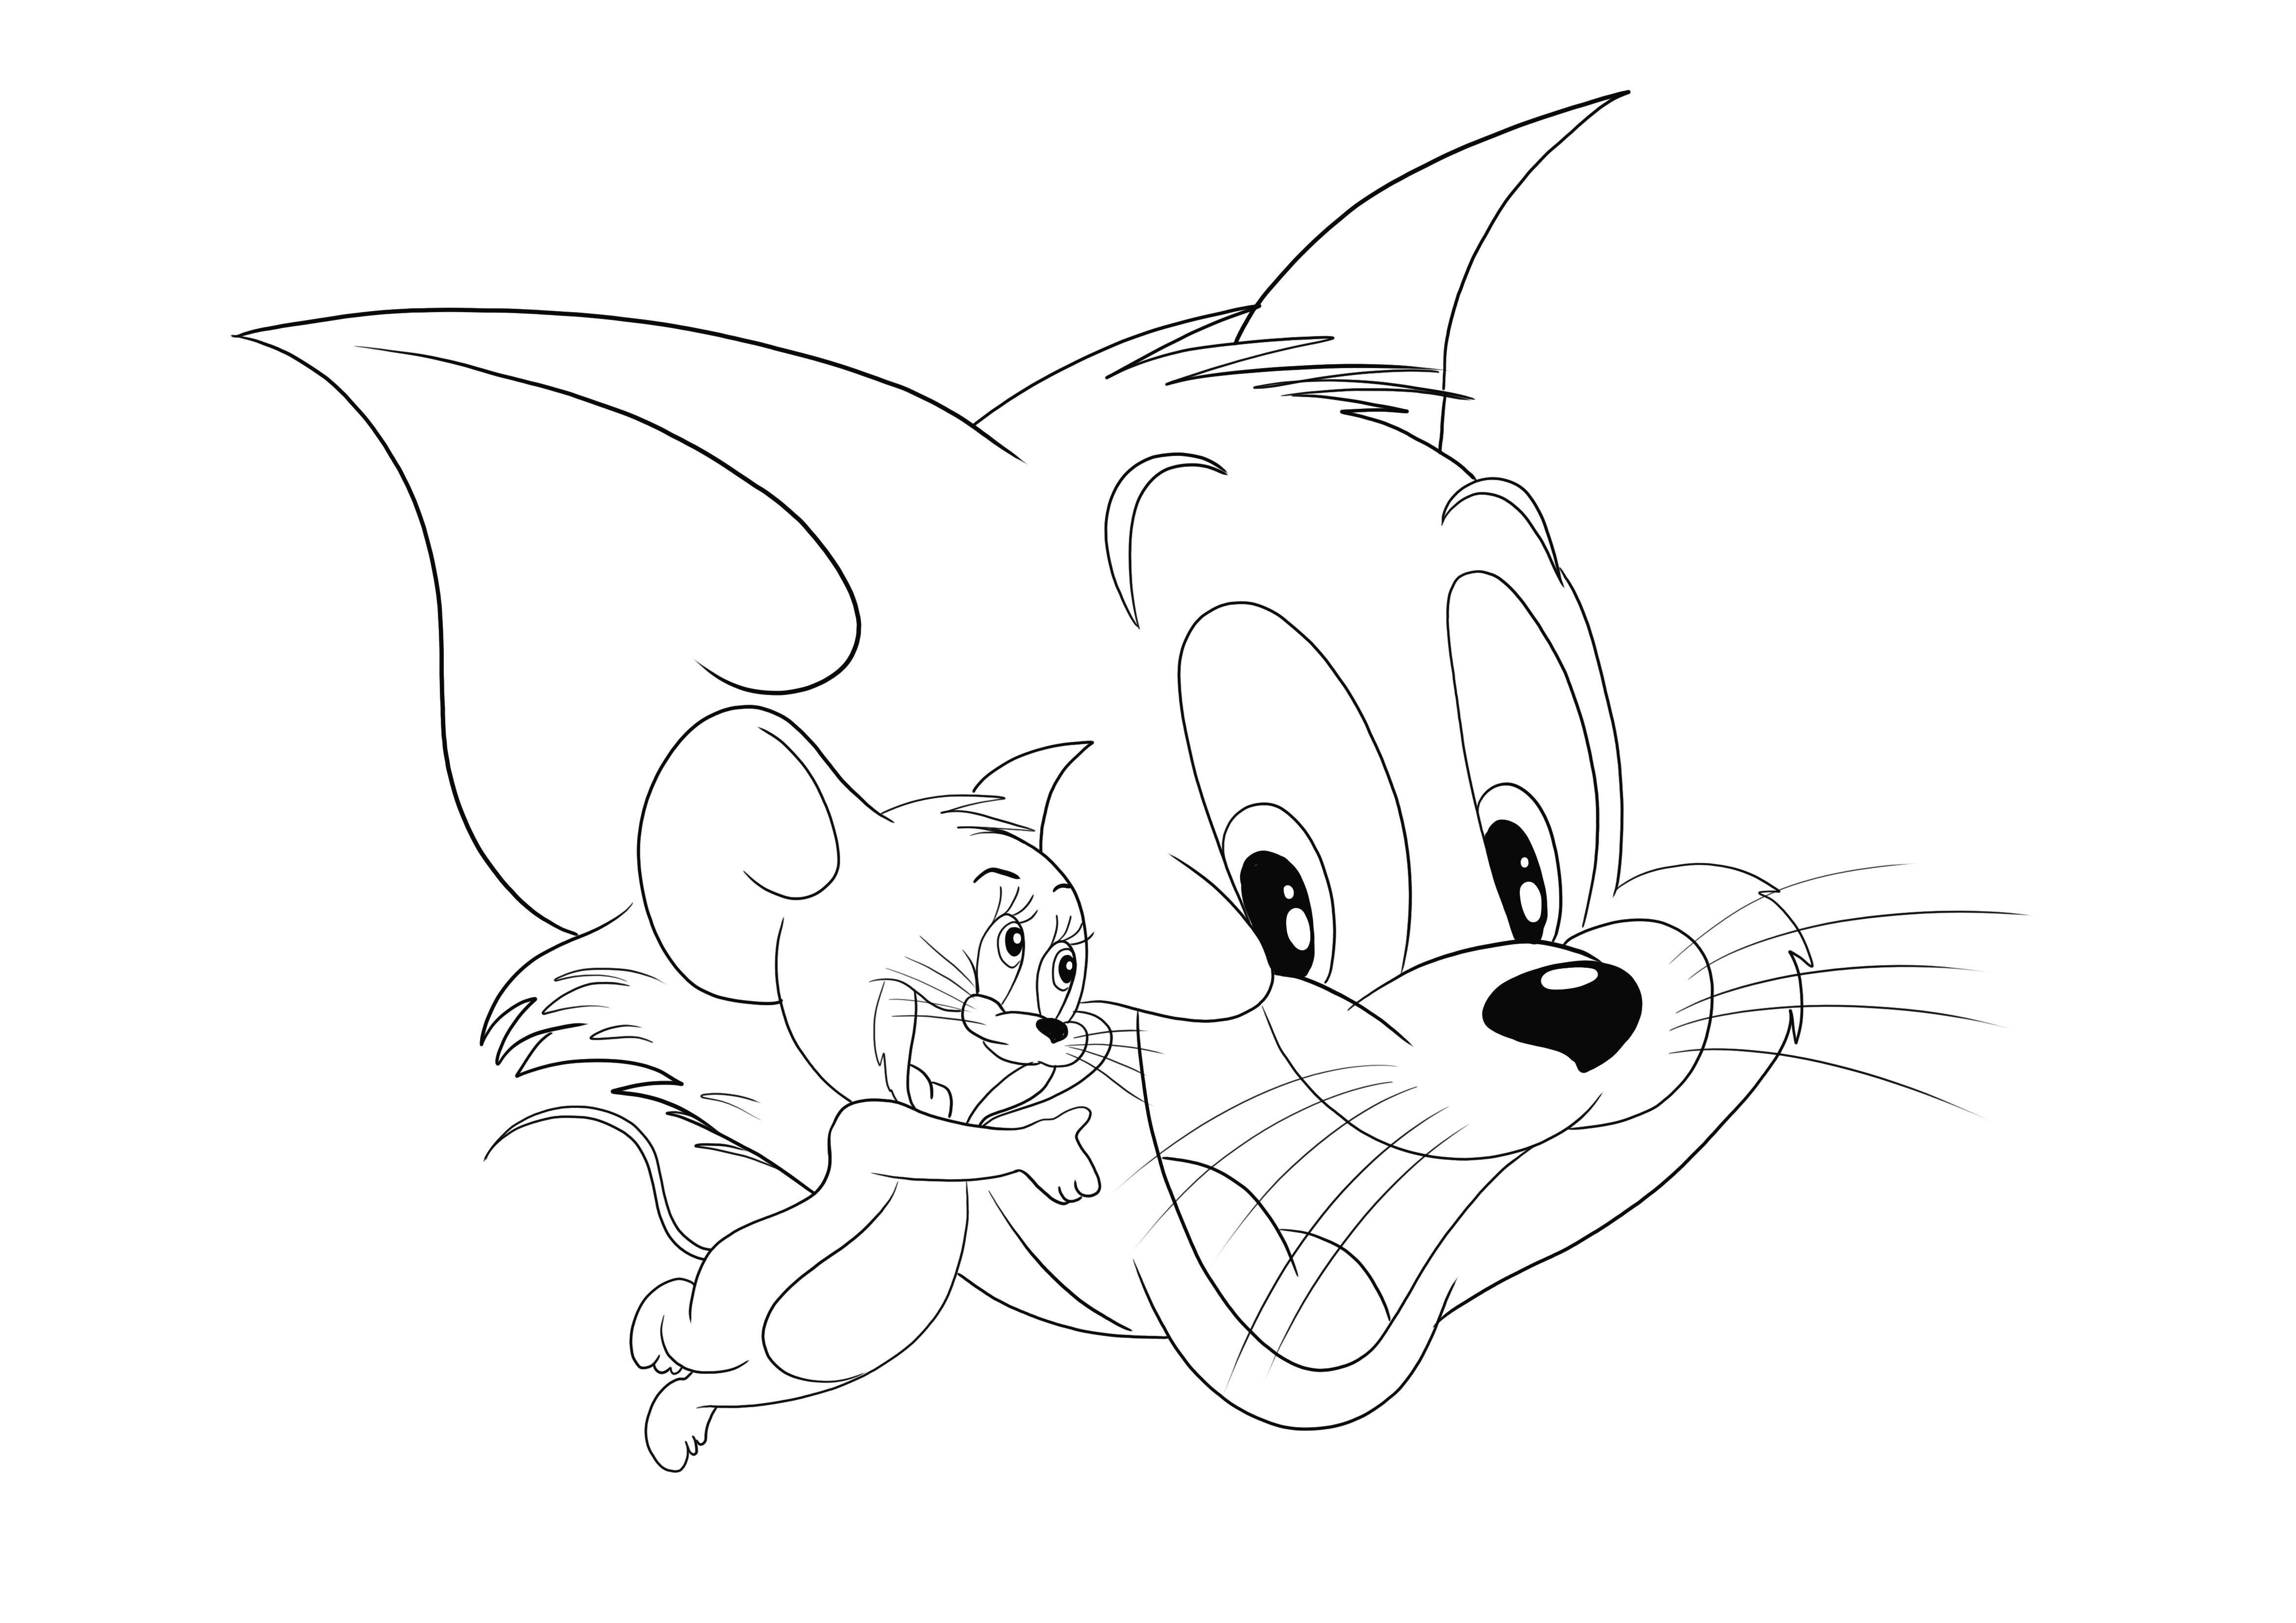 Tom ve Jerry ve mutlu yüzleri indirilmeyi ve küçük hayranları tarafından renklendirilmeyi bekliyor